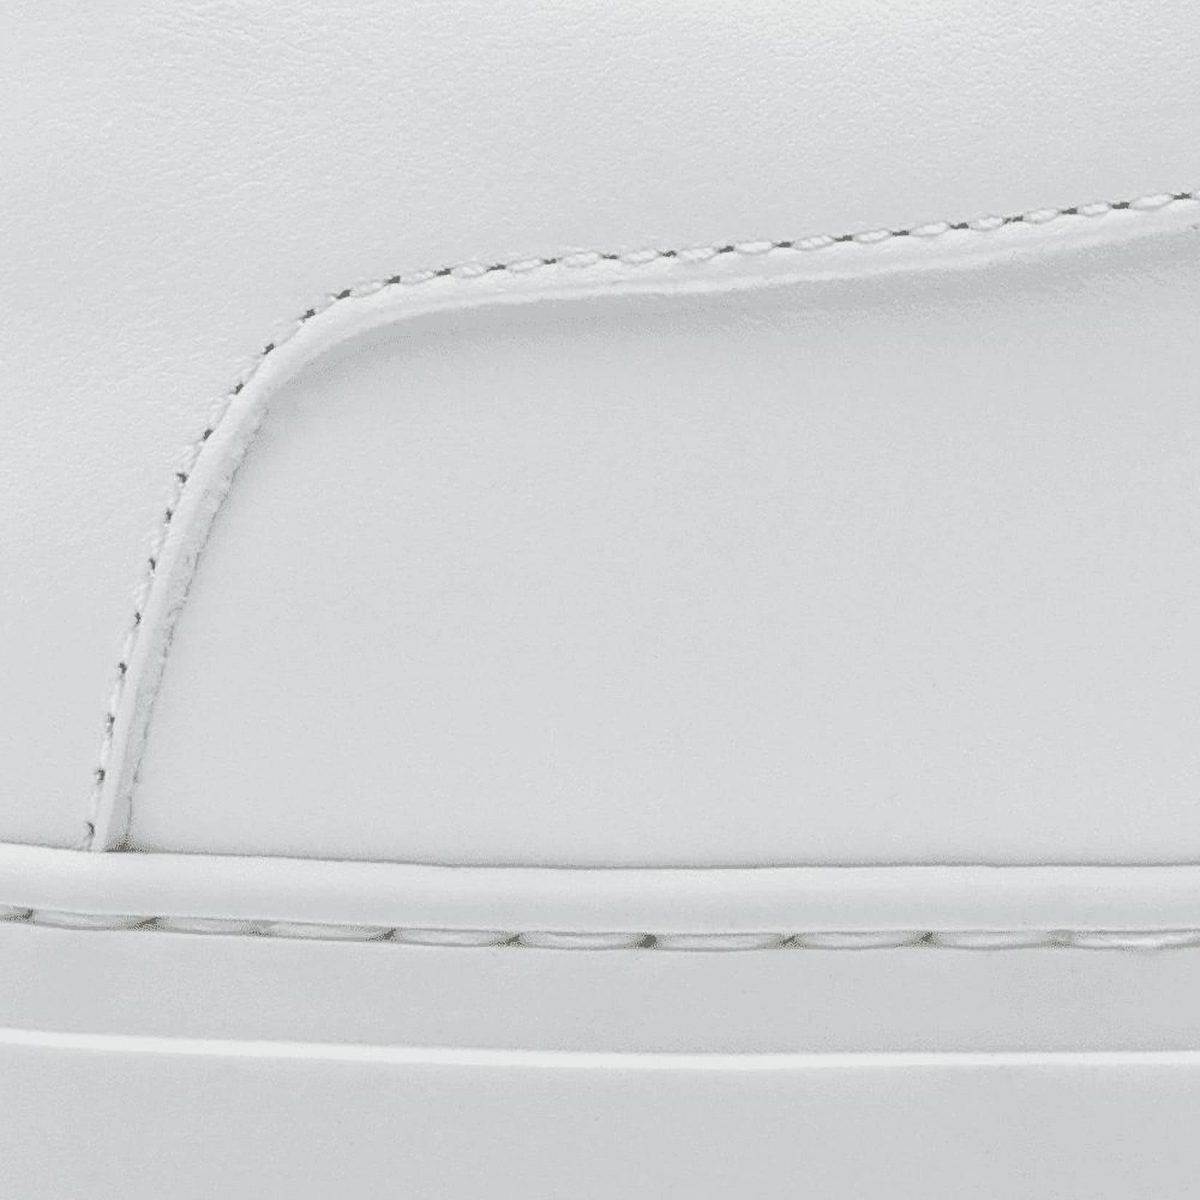 Koio sneakers review capri materials - Luxe Digital